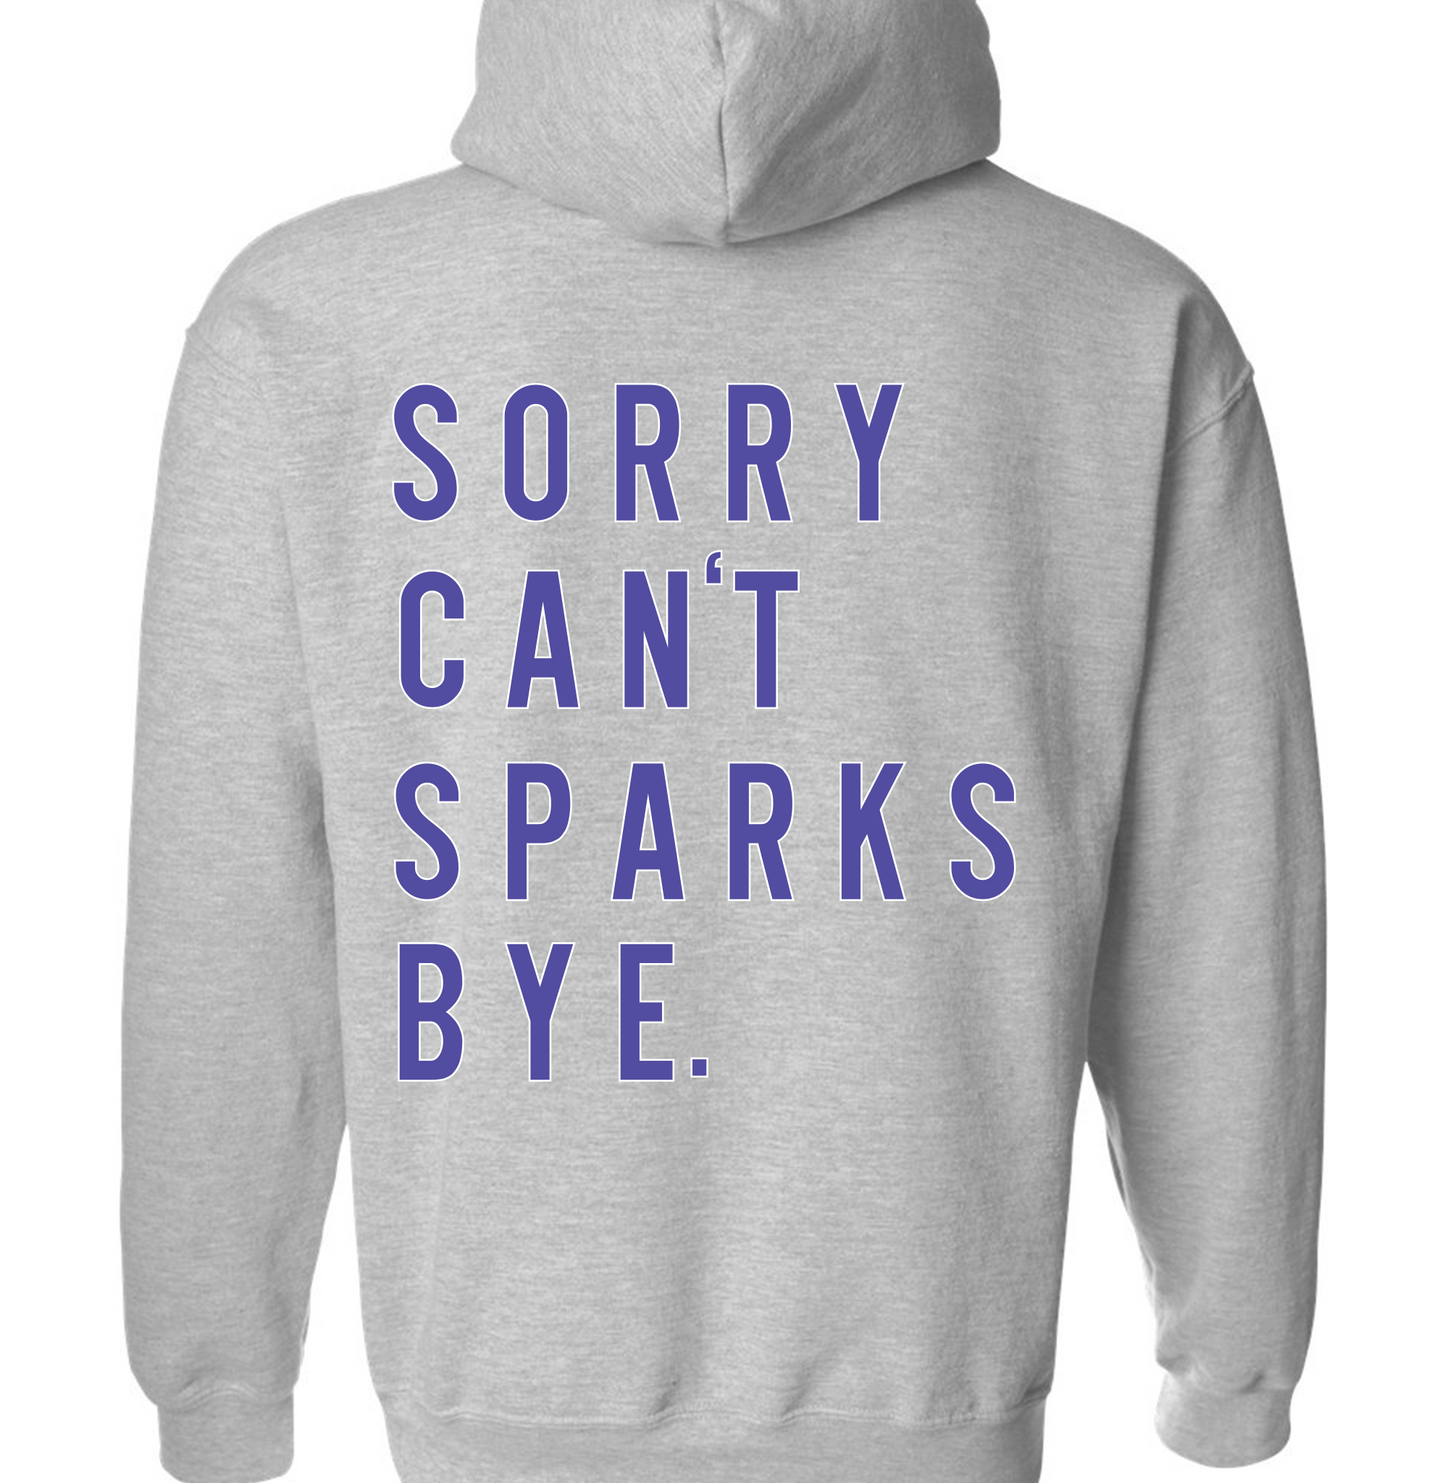 SPARKS Sorry Bye Sweatshirt